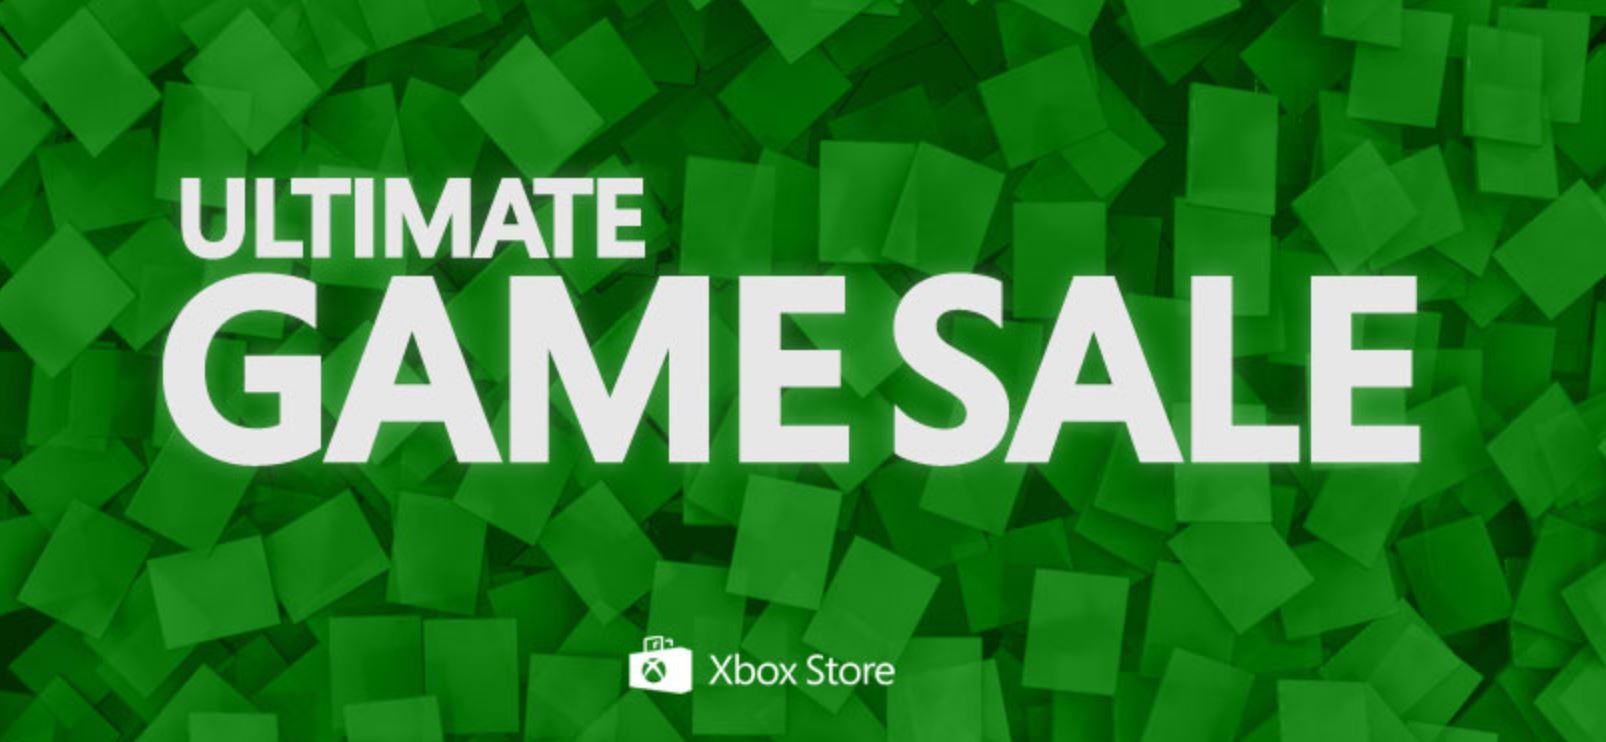 Это названия в ежегодной окончательной распродаже игр Xbox от Microsoft.